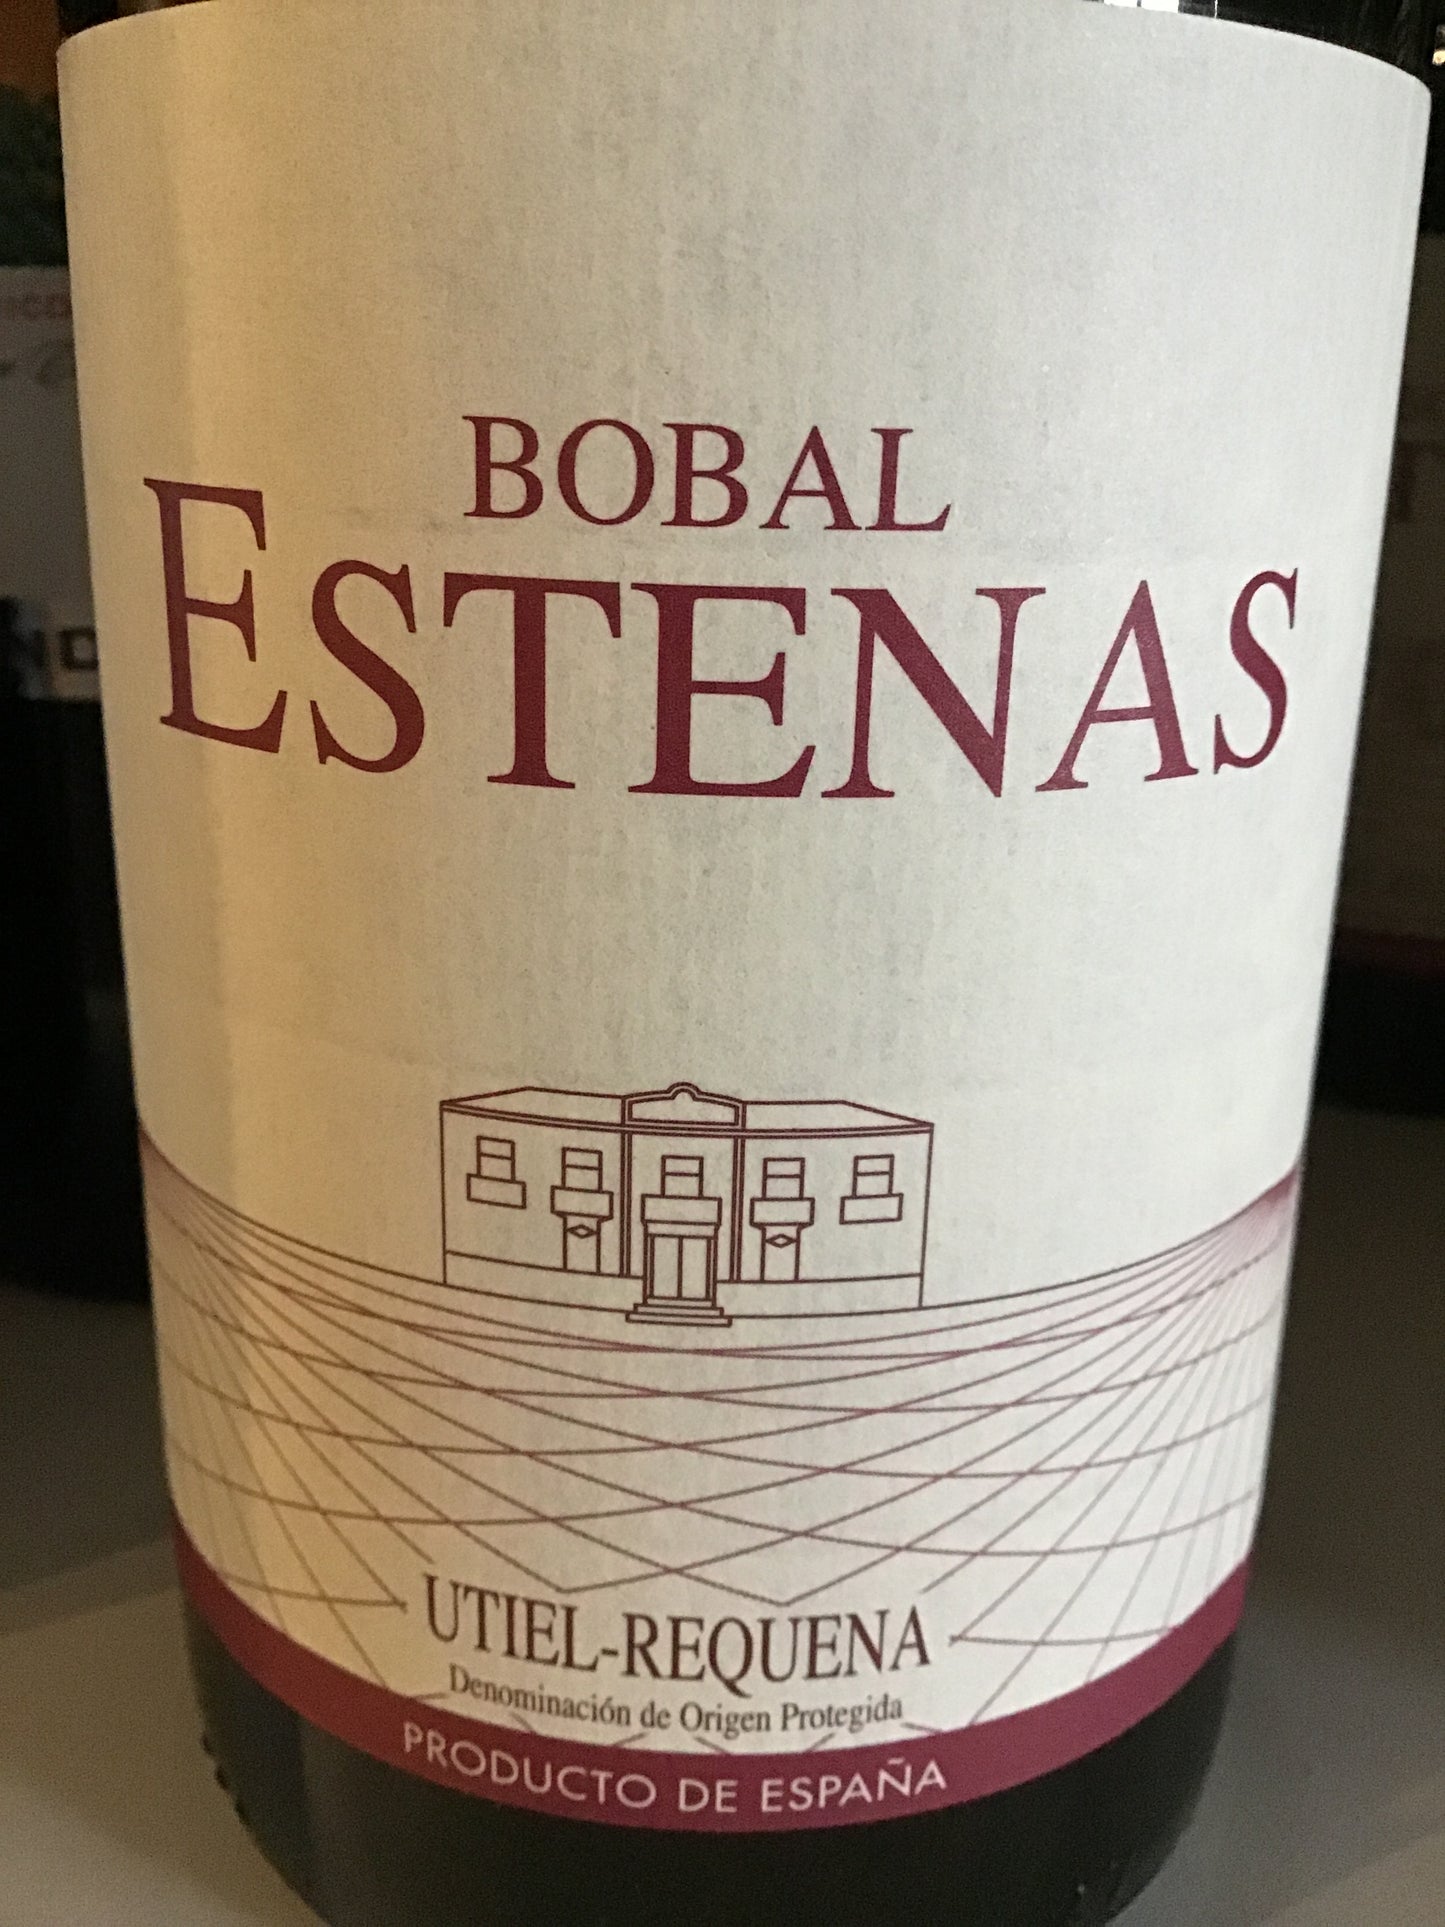 Vera de Estenas - Bobal - Utiel-Requena Spain